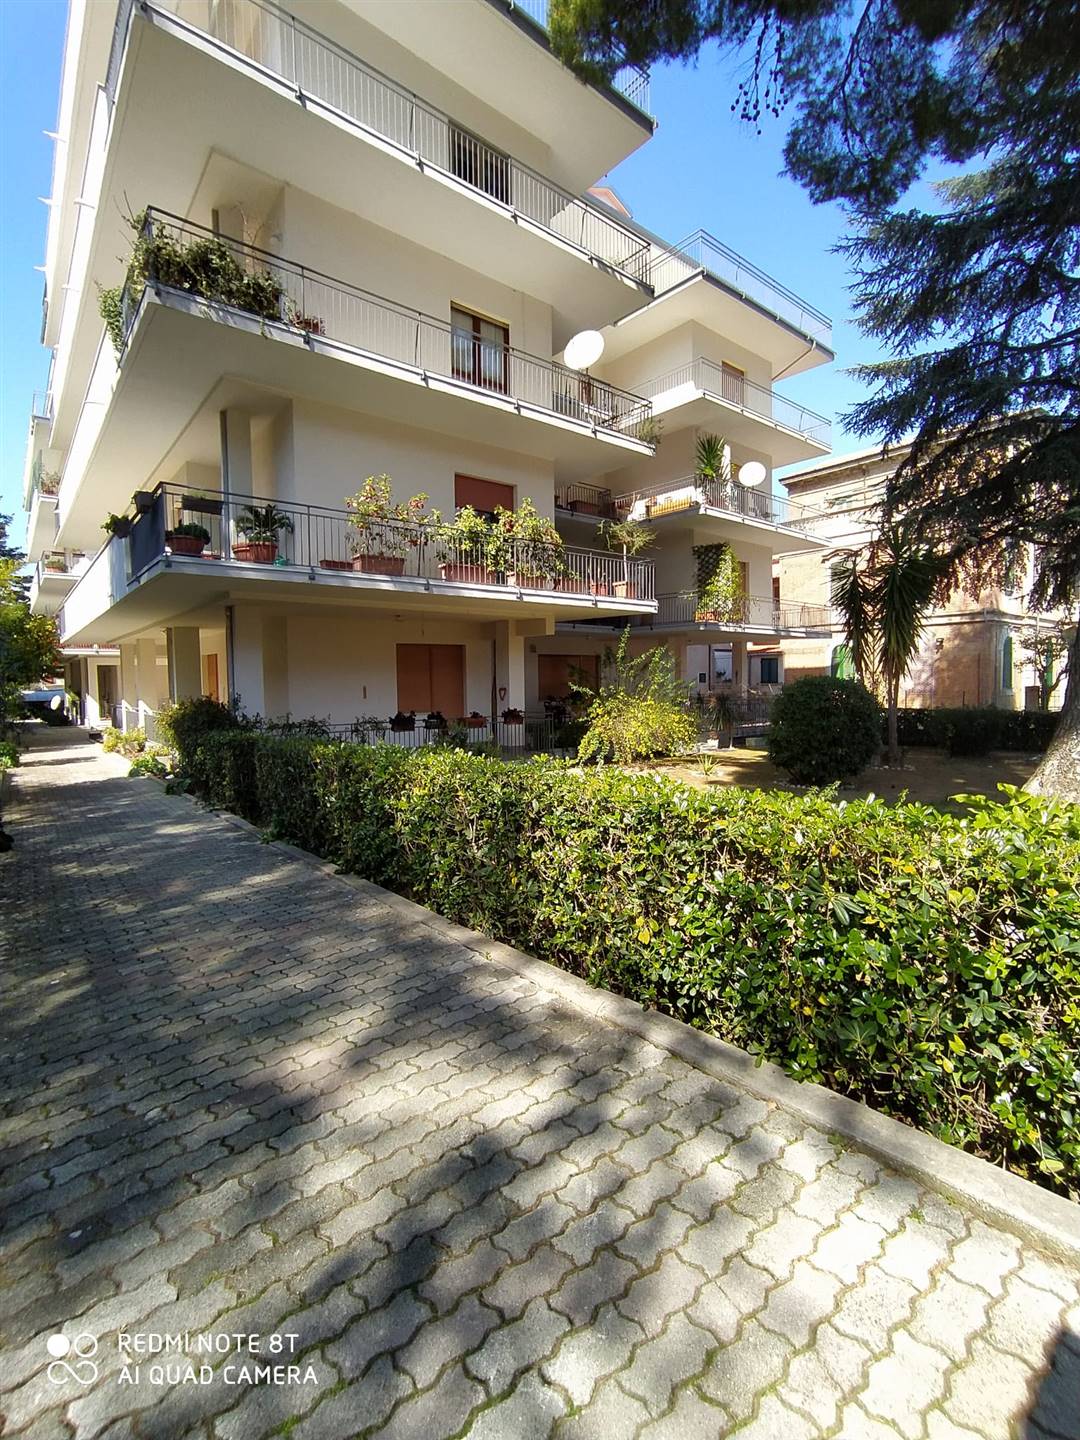 Appartamento in affitto a Lanciano, 6 locali, prezzo € 500 | CambioCasa.it